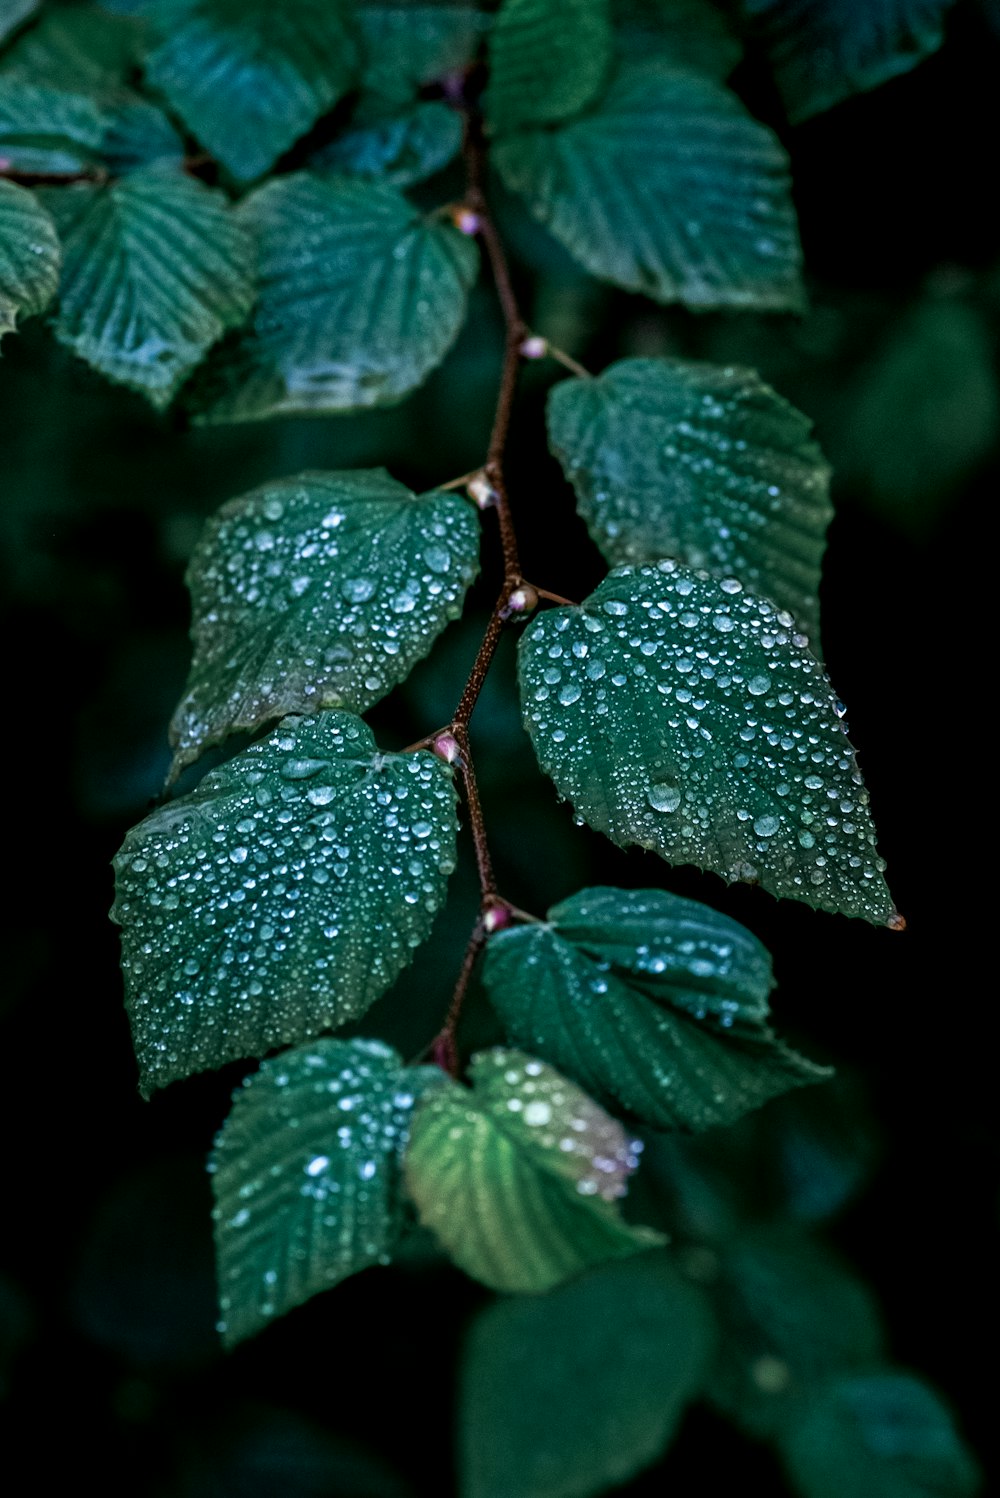 um close up de uma folha com gotículas de água sobre ela